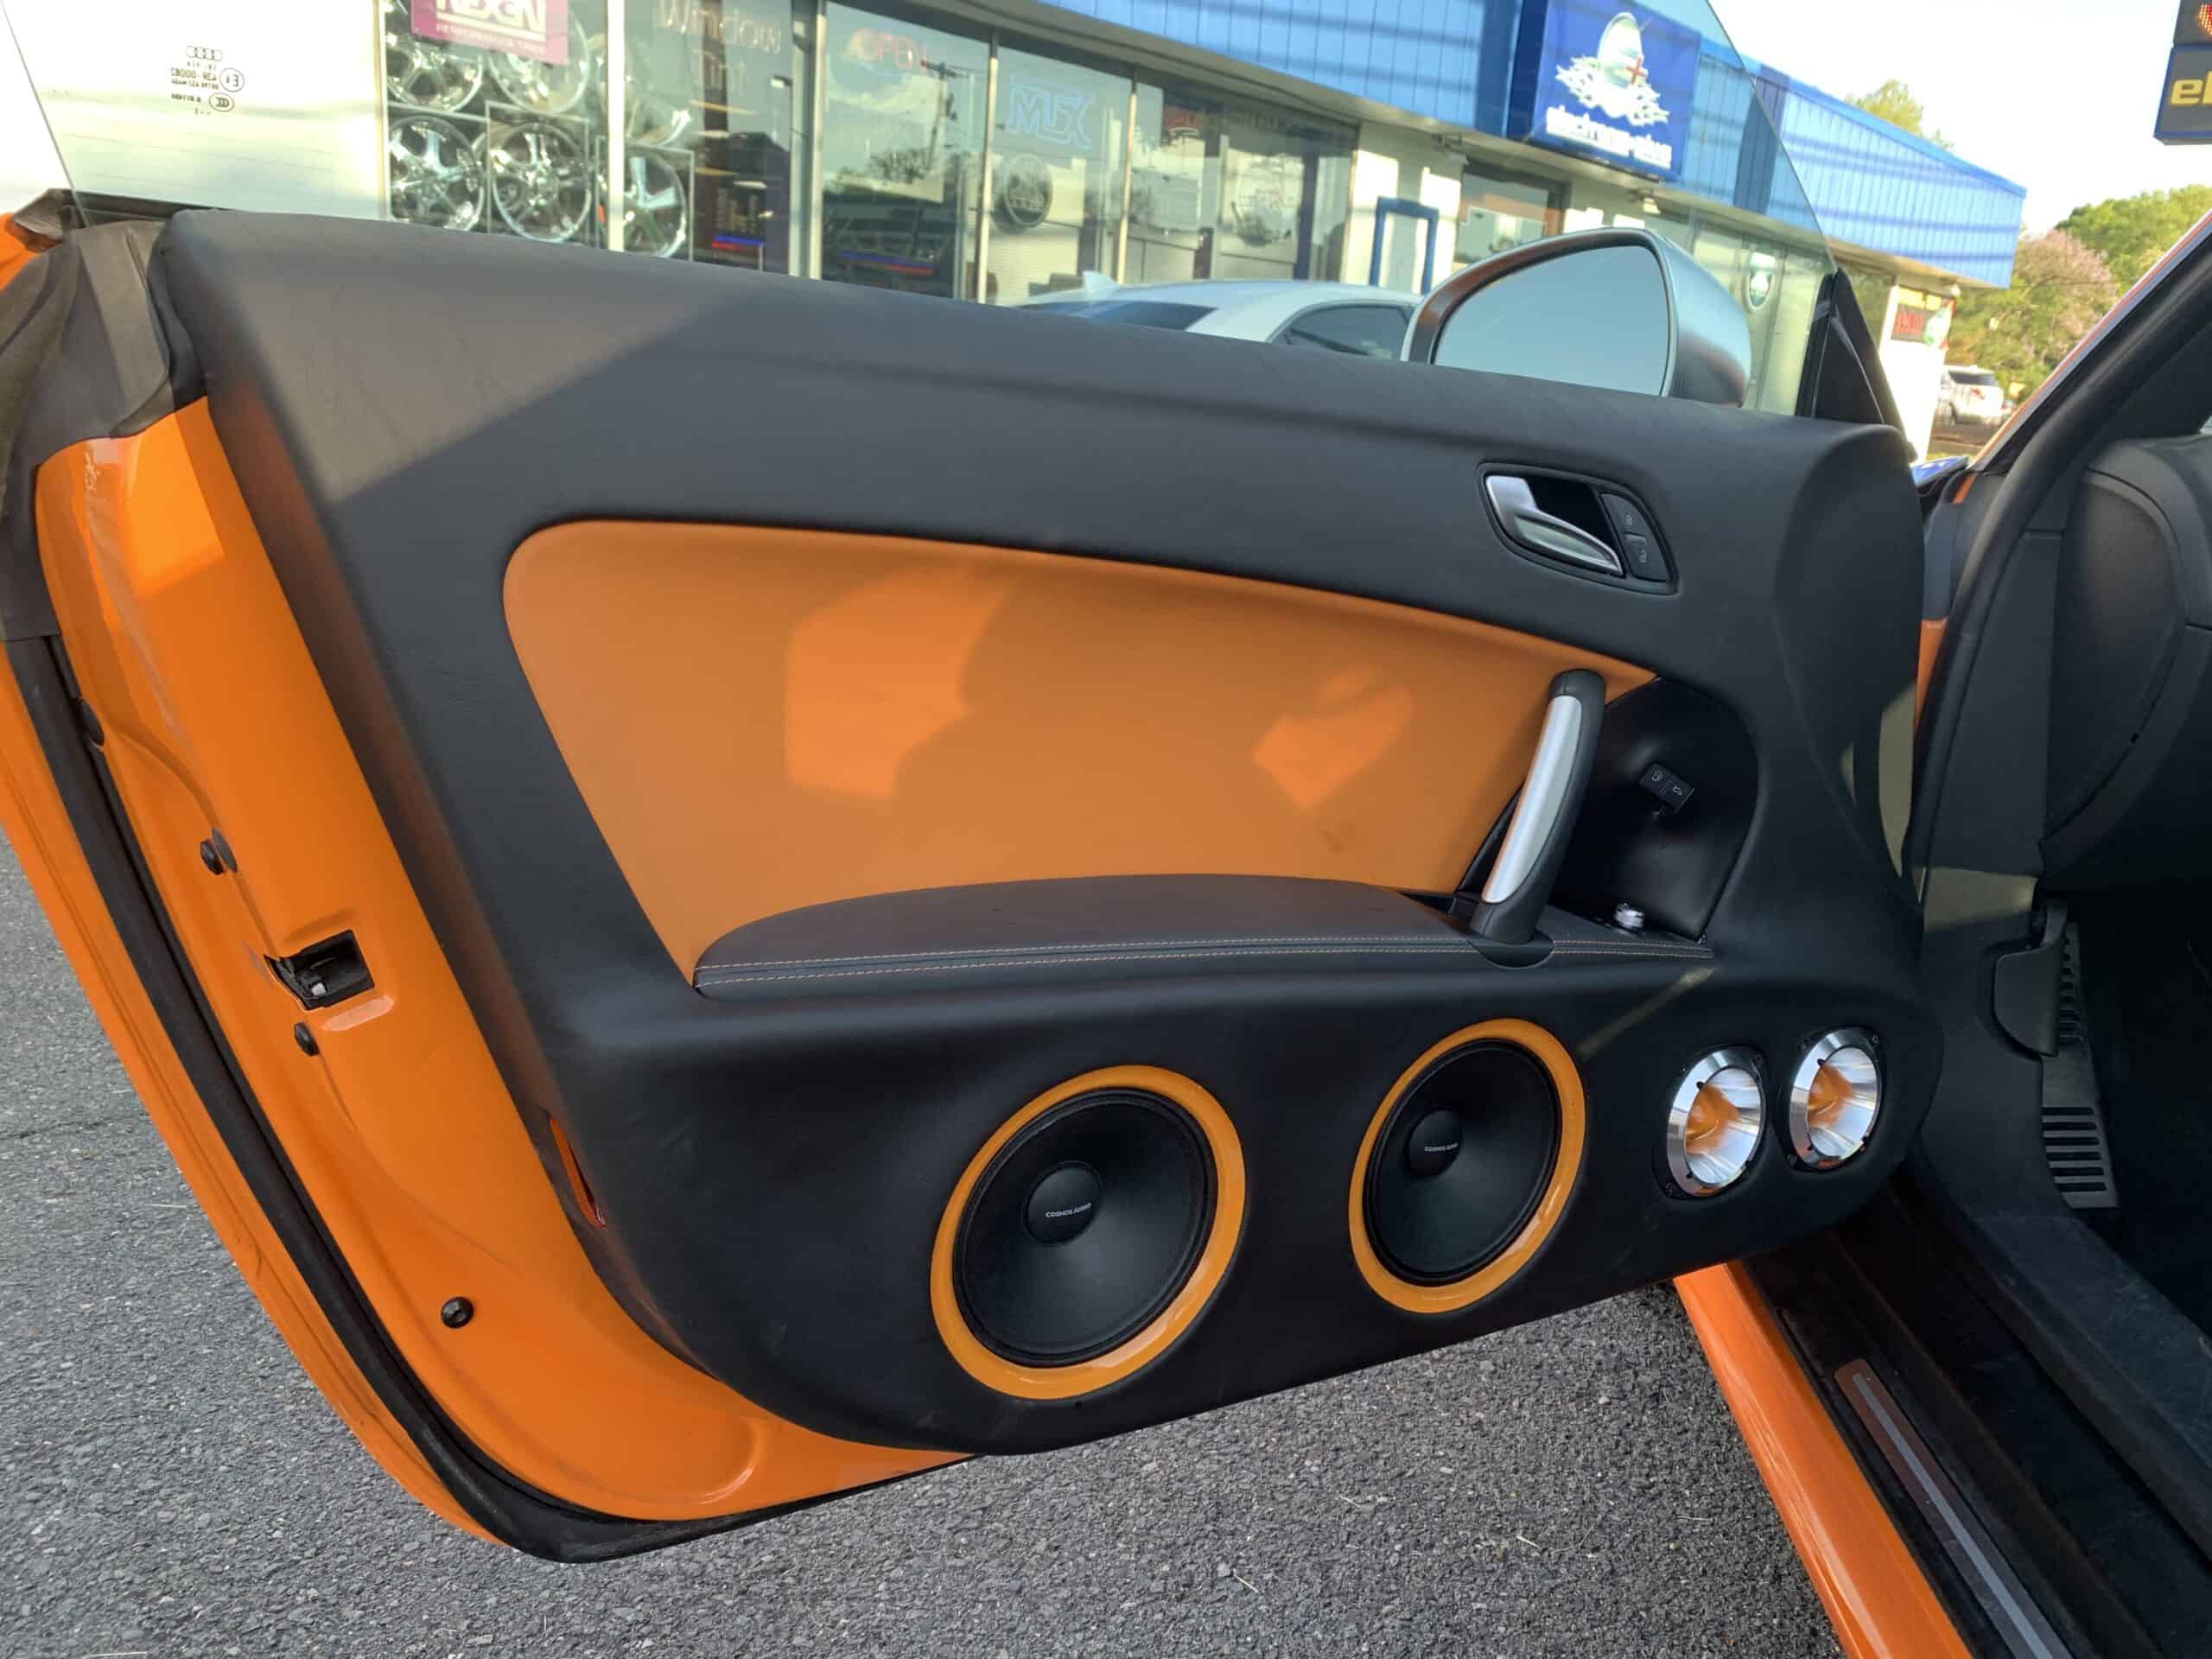 Car audio installation in a orange car